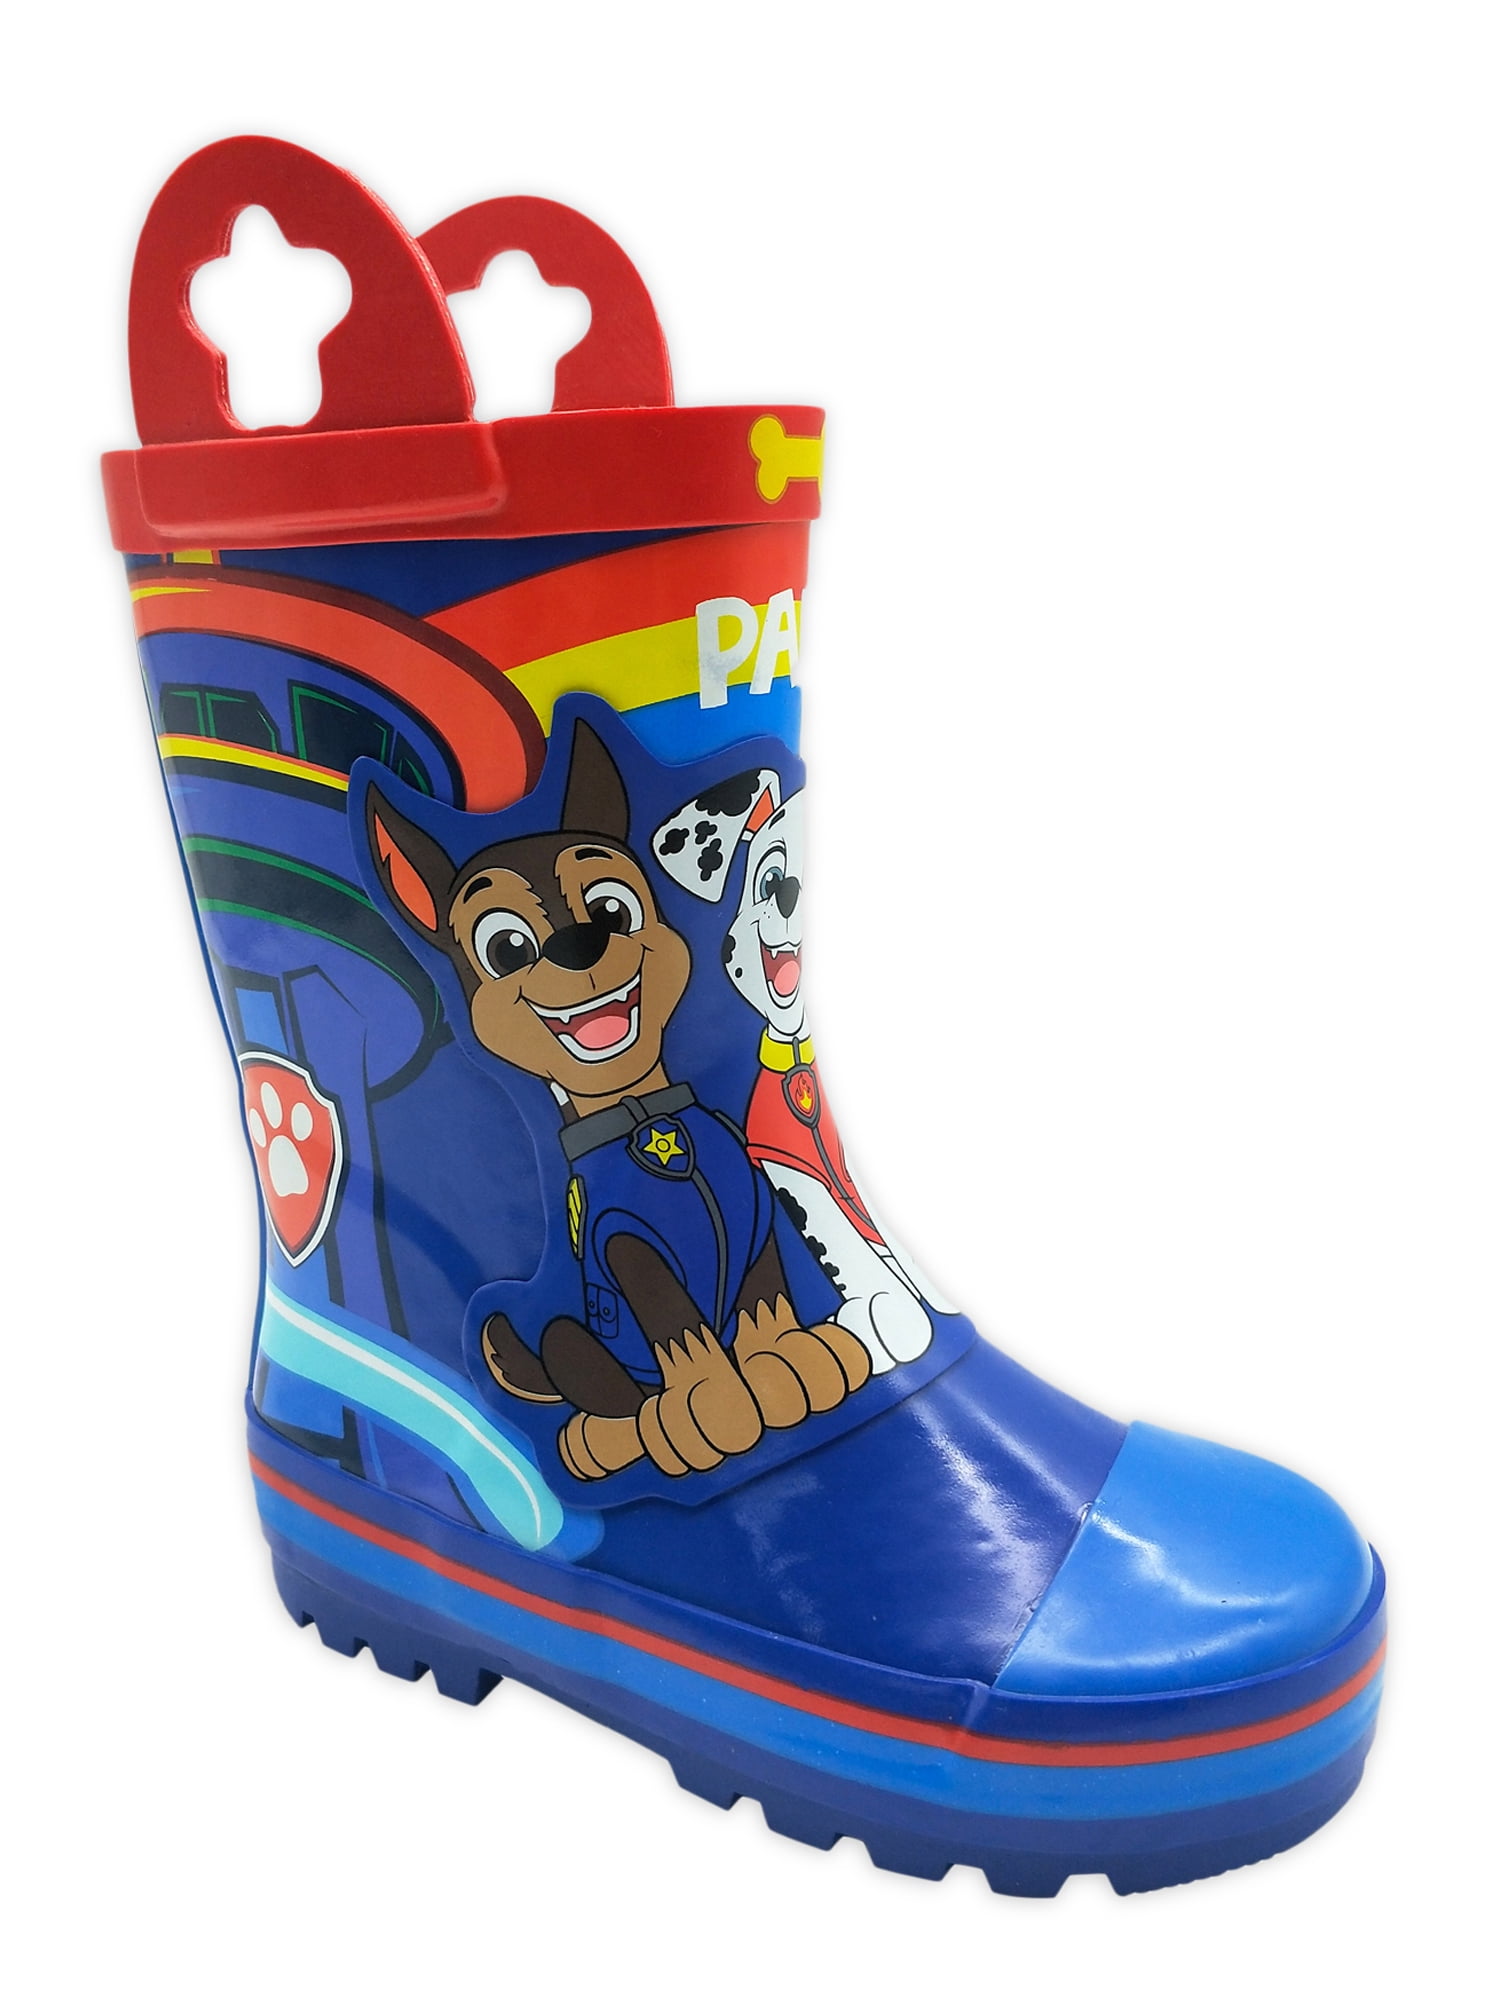 Details about   Boys Paw Patrol Wellington Boots Blue Rubber Rain Wellies Snow Boots Kids Size 